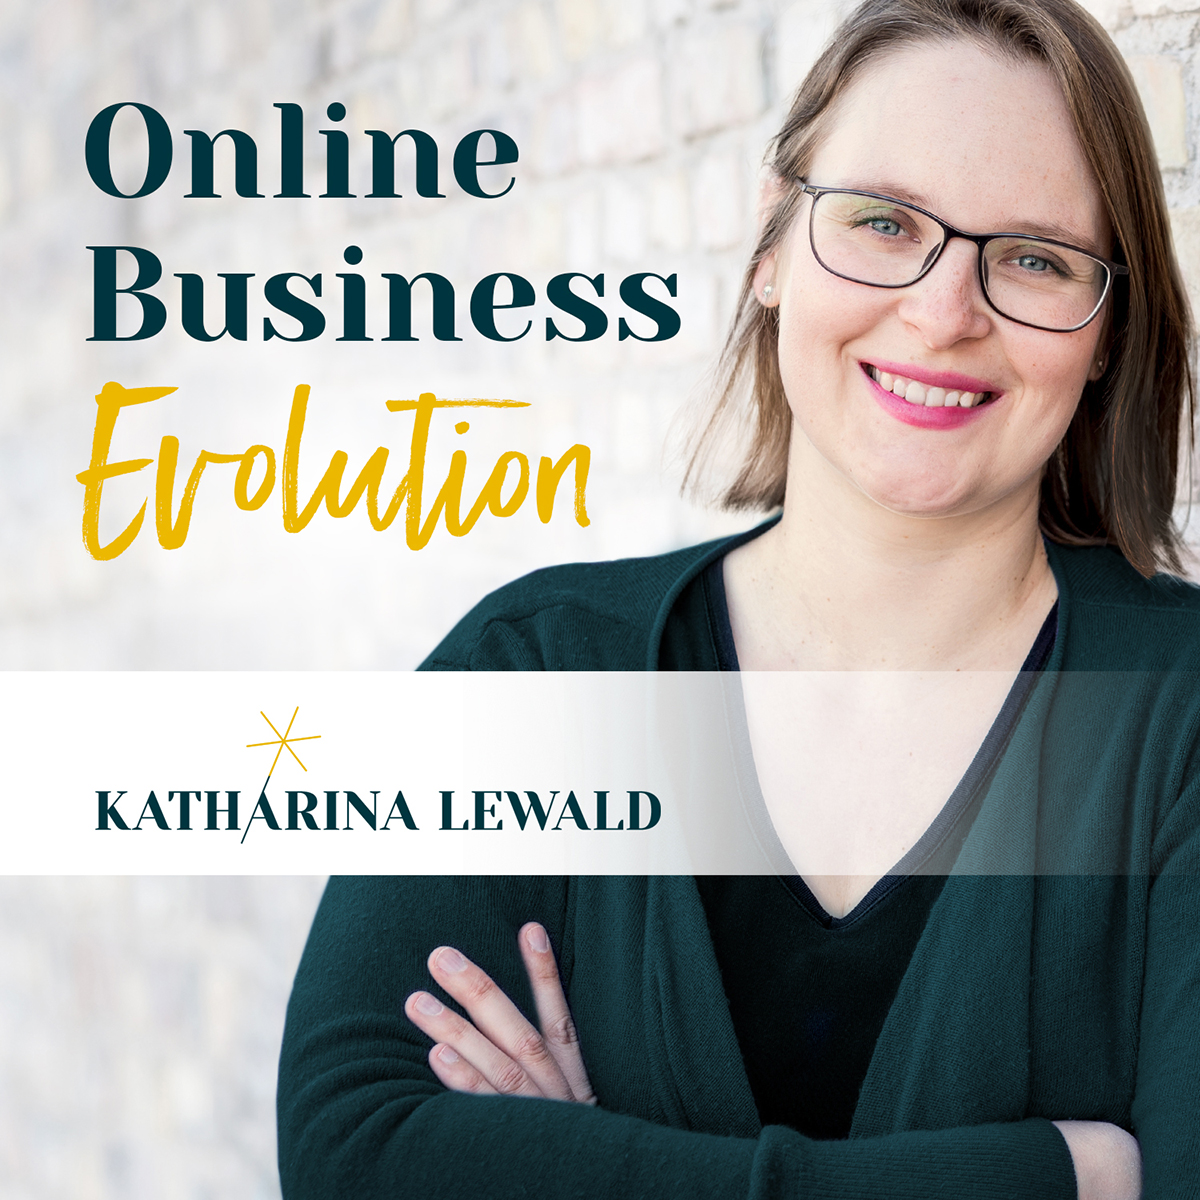 Offline-Events als Booster fürs Online-Business mit Daniela Reuter